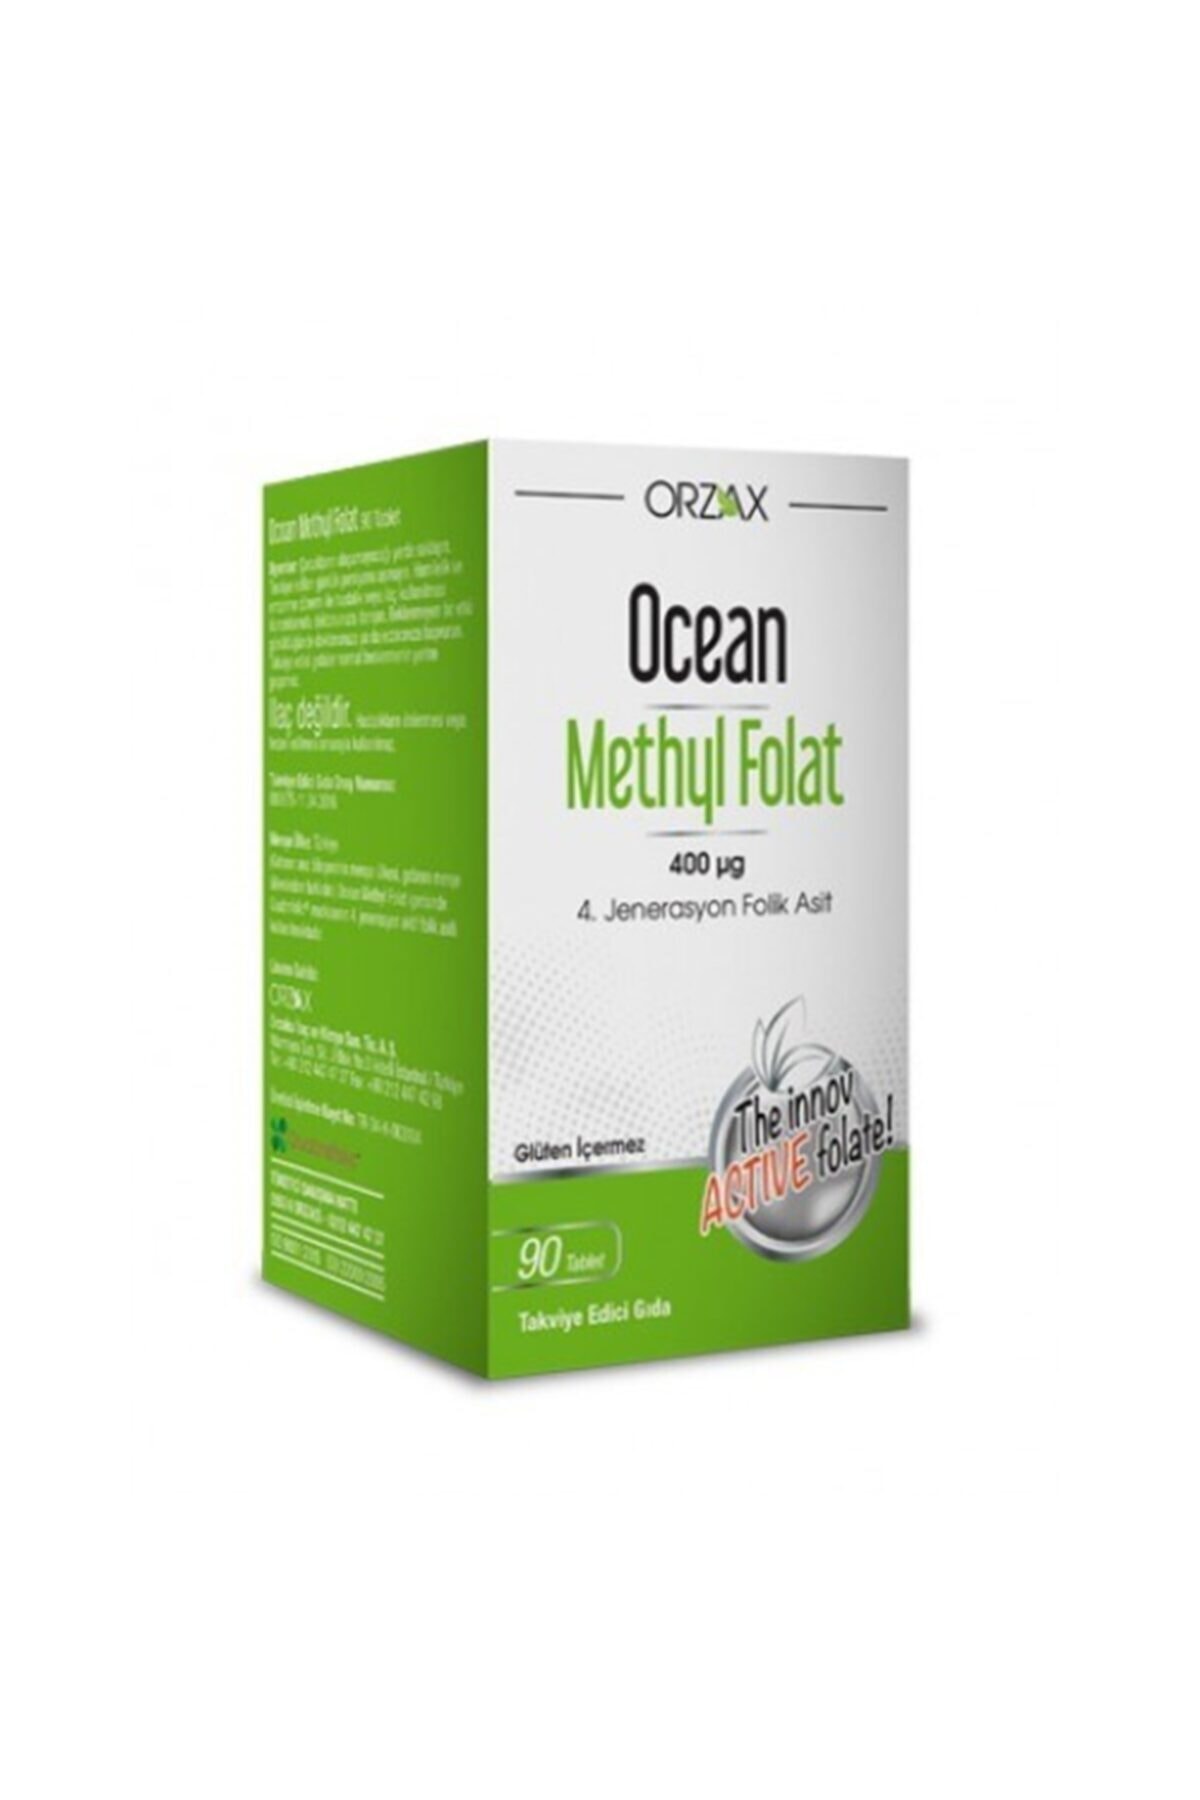 Ocean Ocean Methyl Folat Folik Asit 30 Tablet